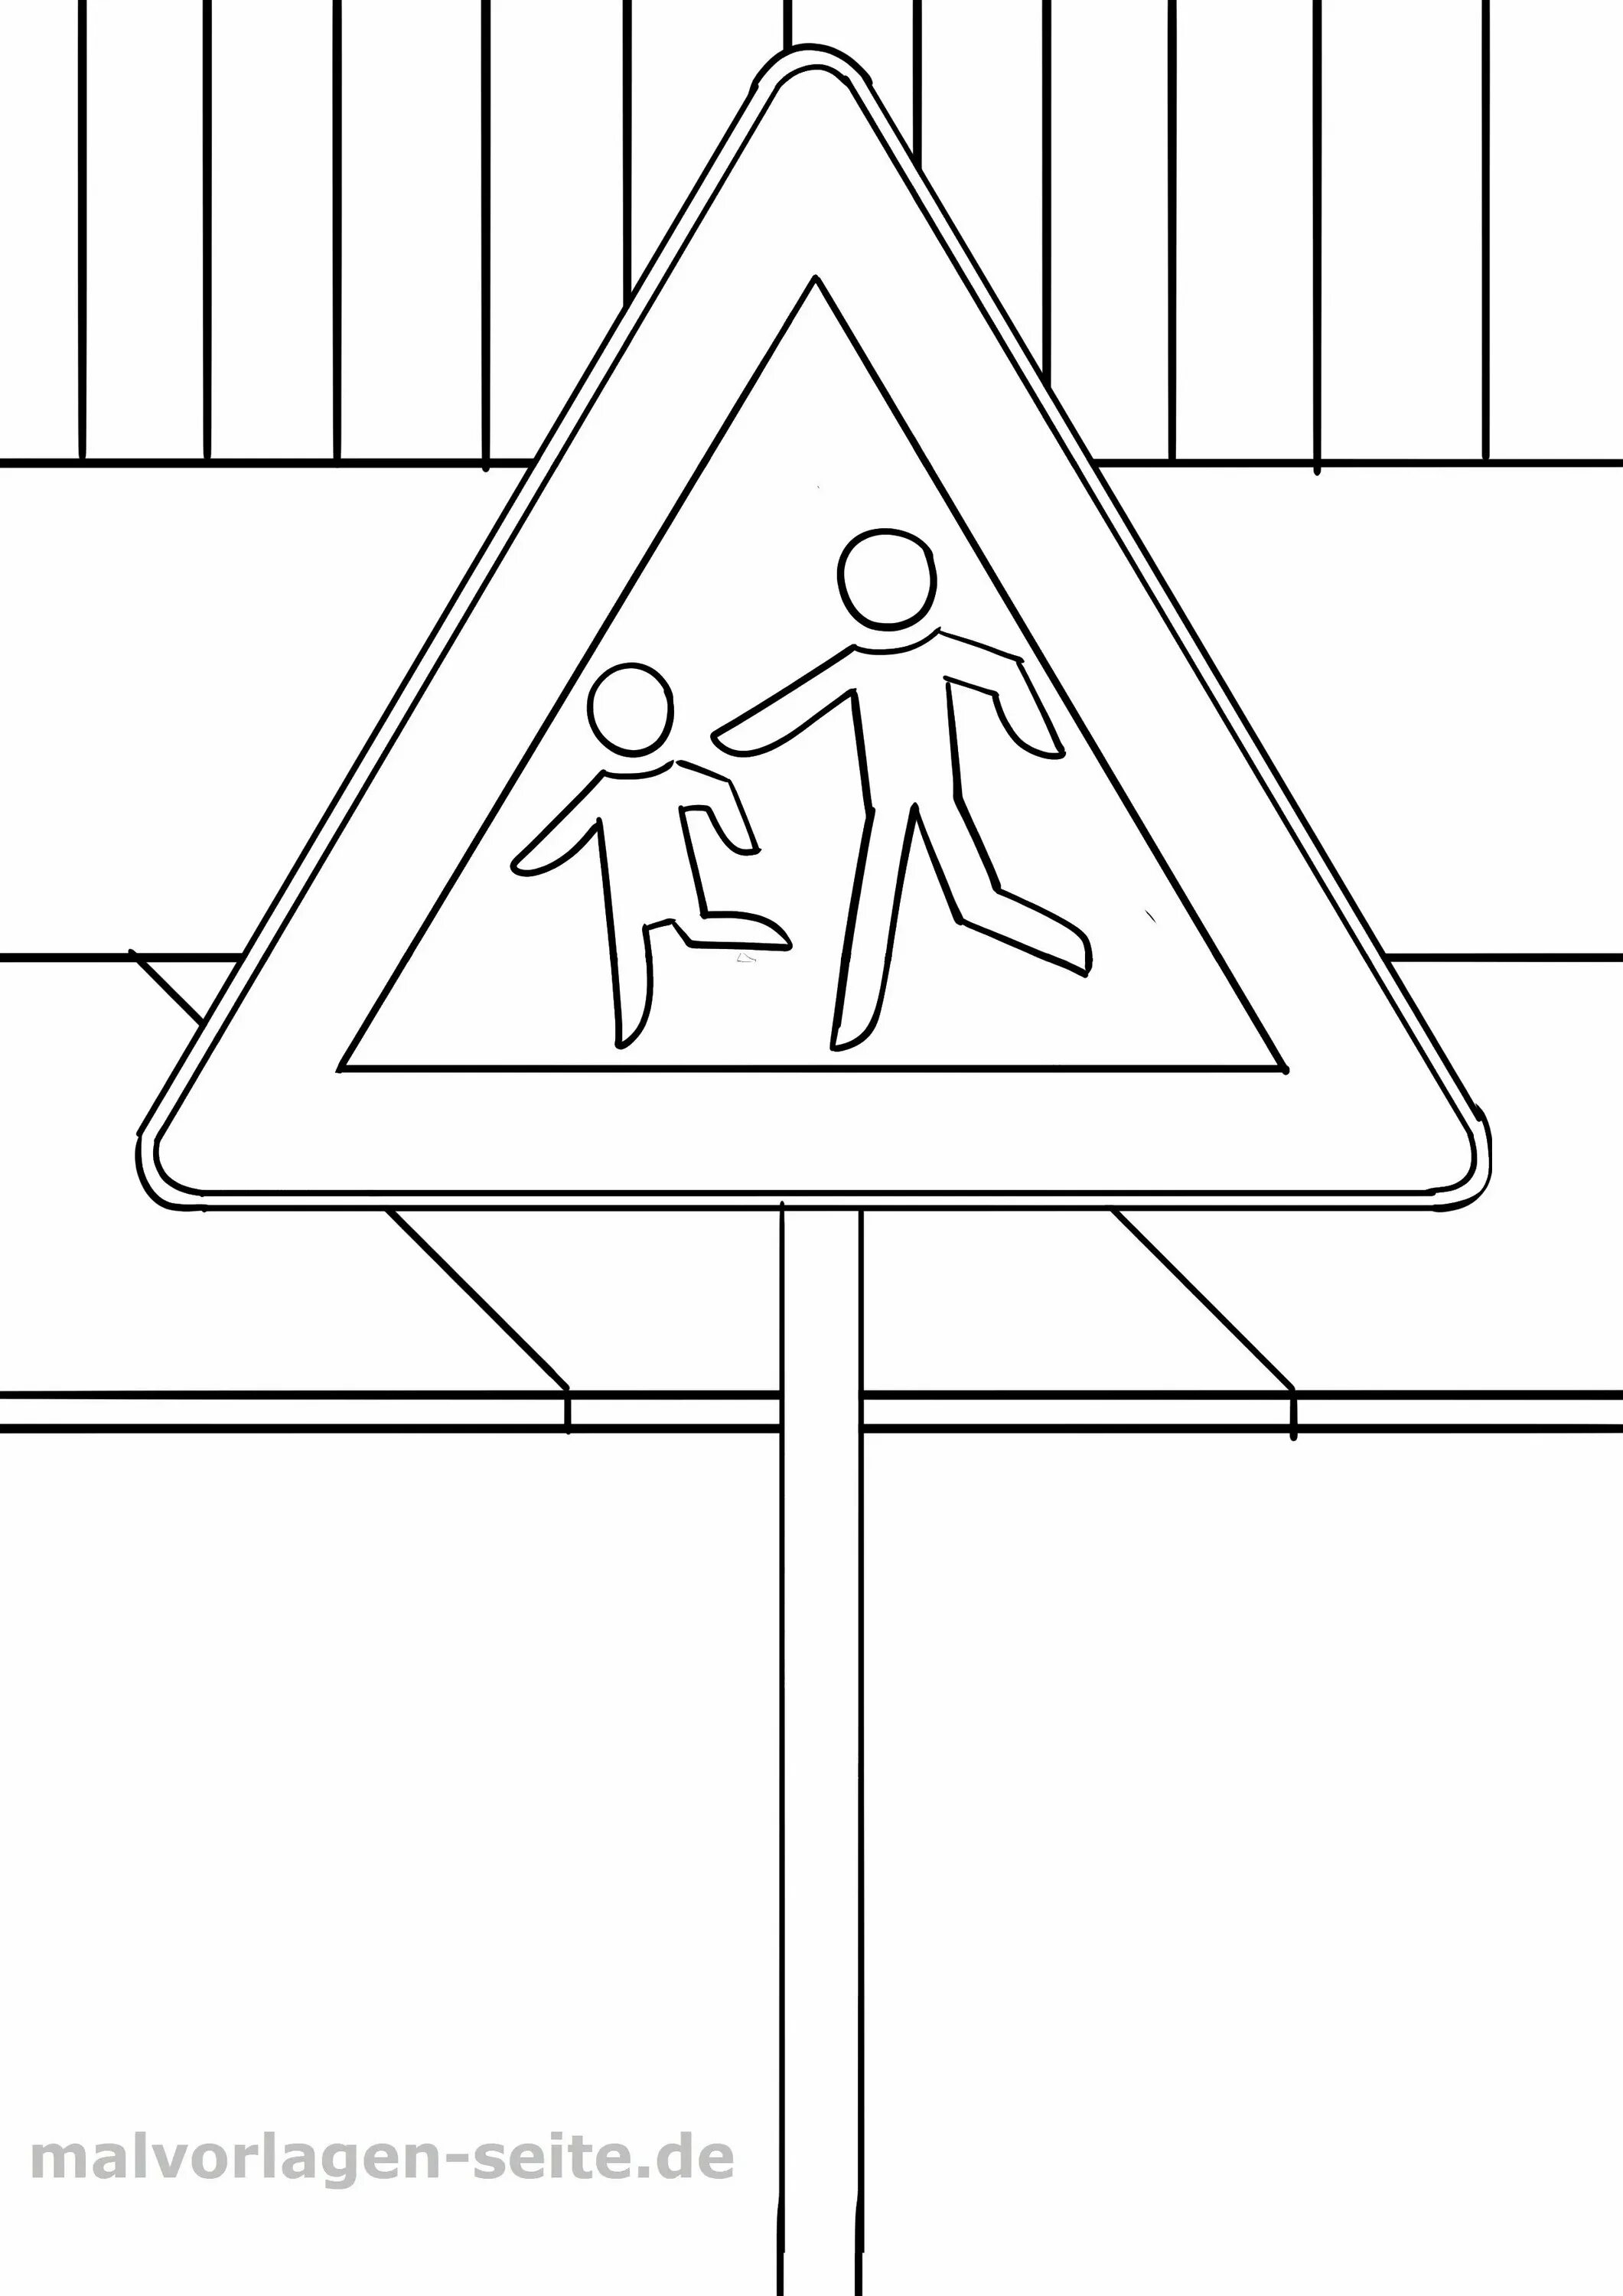 Дорожные знаки раскраска. Дорожные знаки раскраска для детей. Раскраска знаки дорожного движения для детей. Знаки ПДД раскраска.